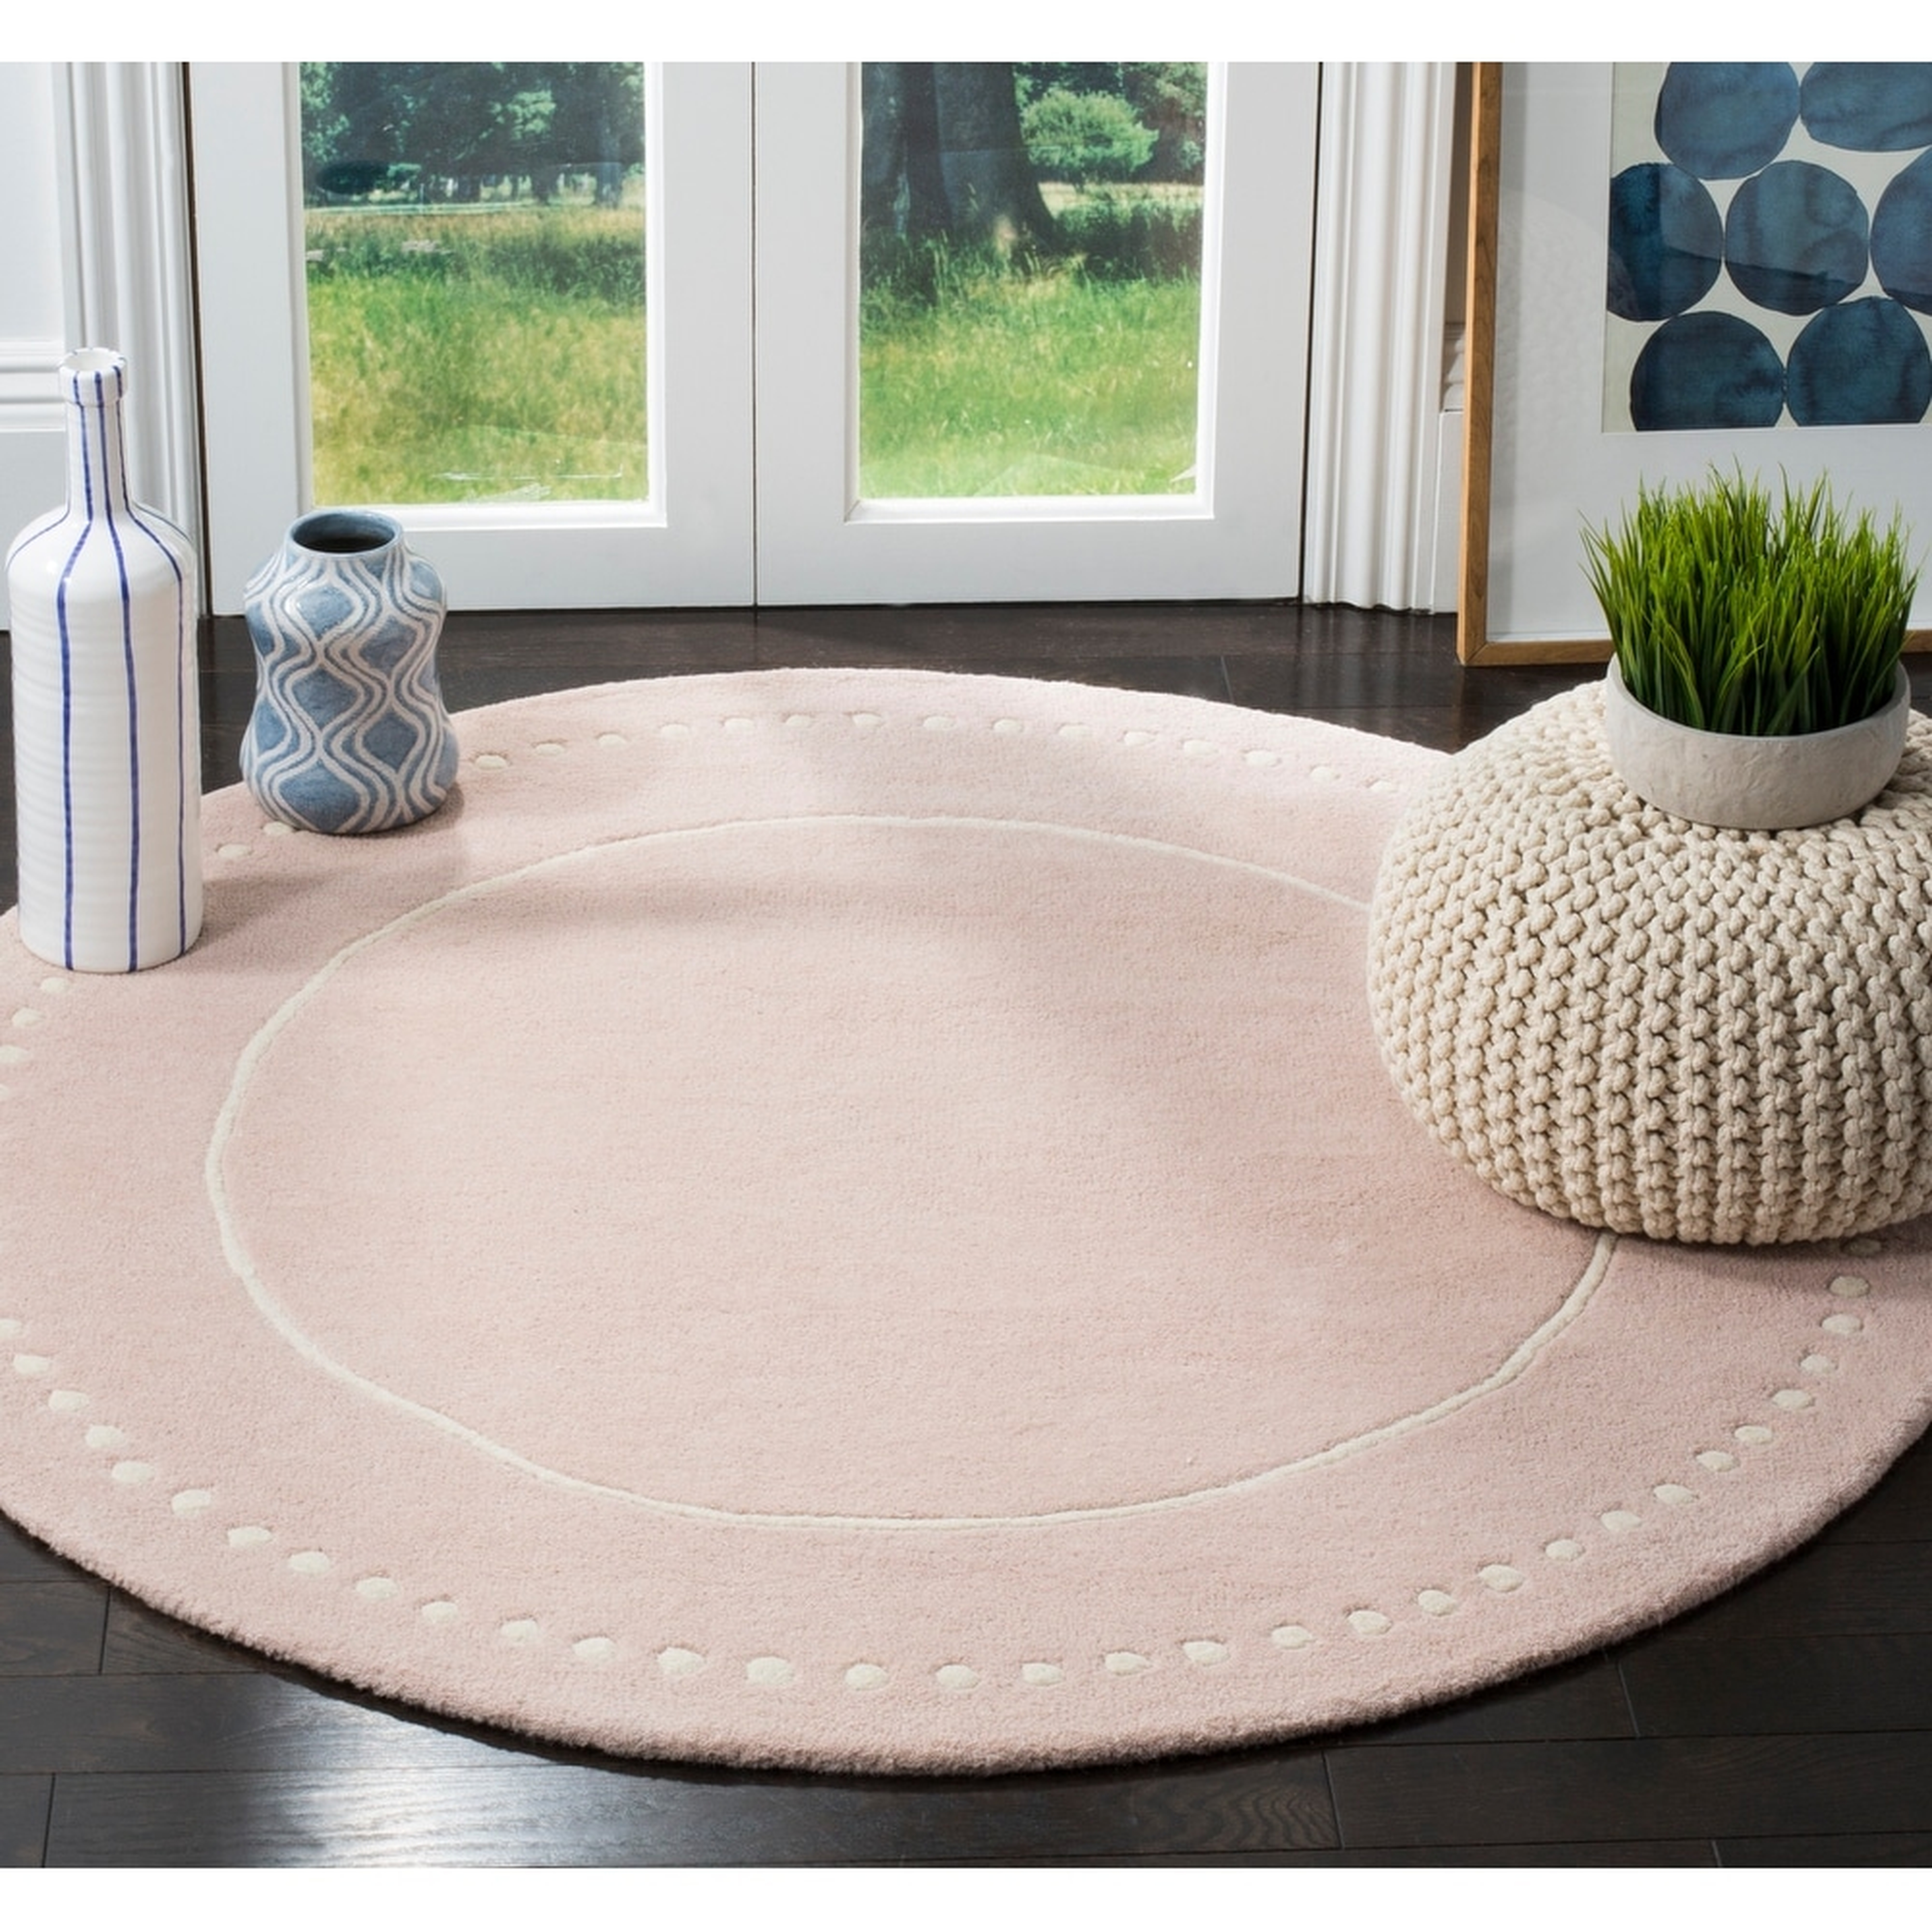 Safavieh Handmade Bella Alverta Modern Floral Wool Rug - 7'x'7' Round - Light Pink/Ivory - Overstock